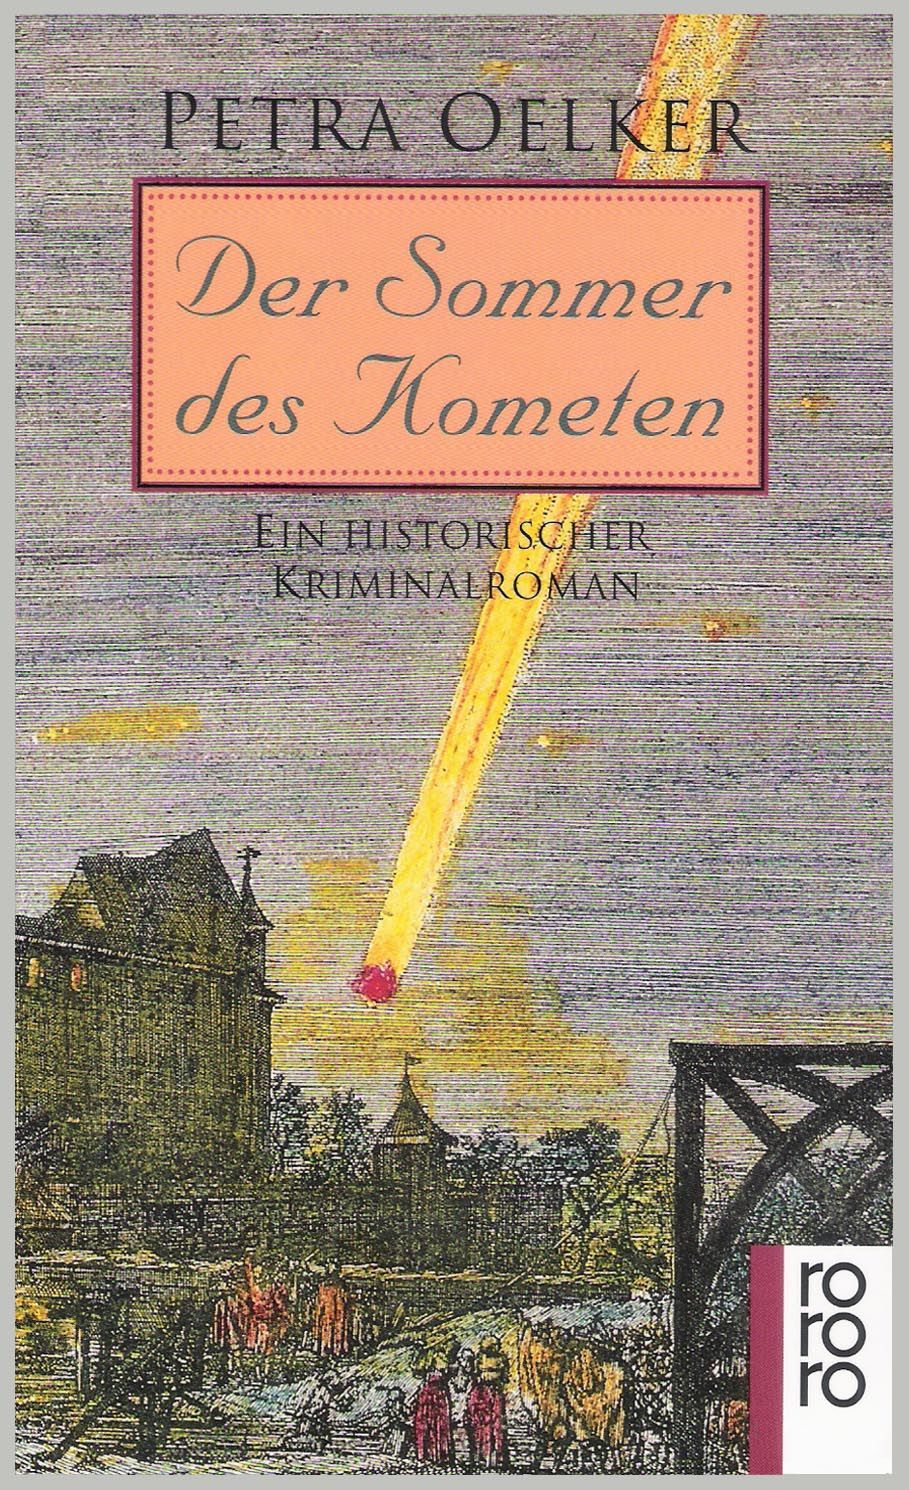 Der Sommer des Kometen [Taschenbuch] by Petra Oelker